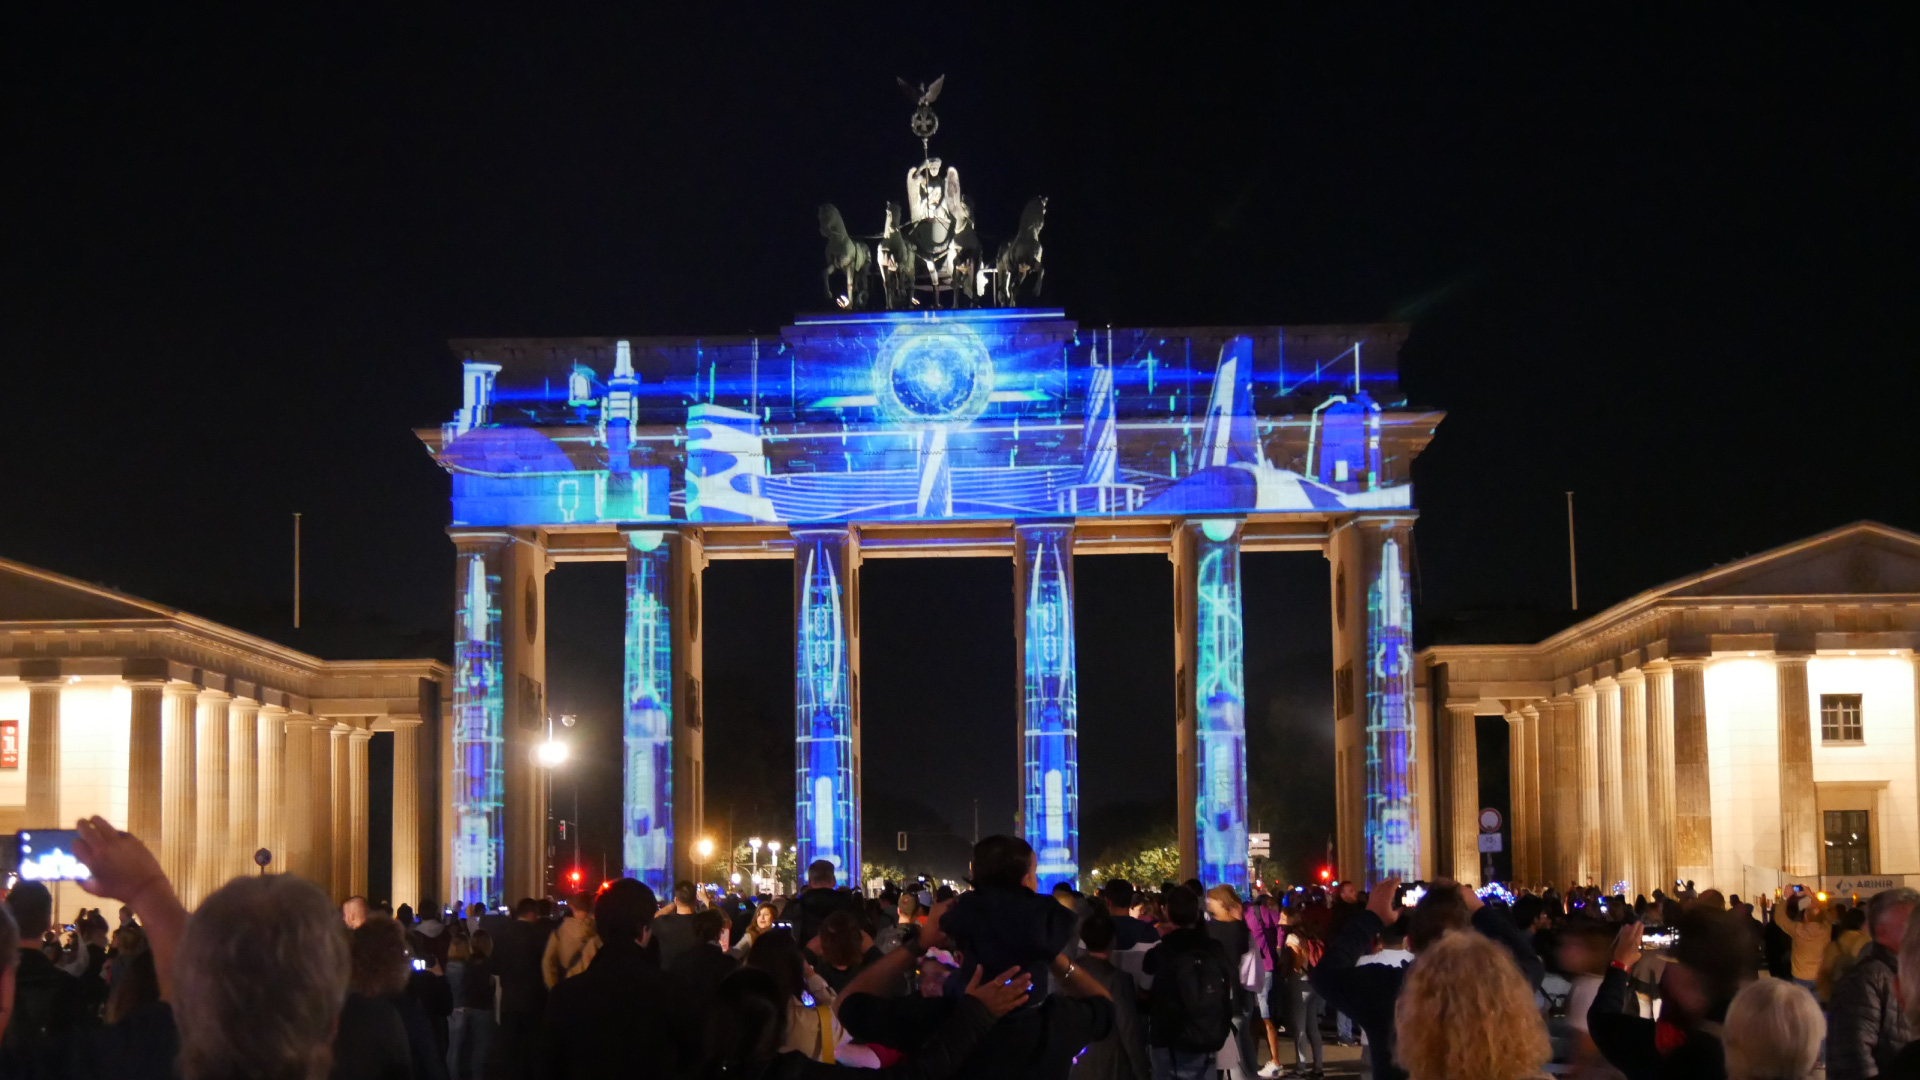 PRG lieferte mehr als 20 Projektoren für die Umsetzung dieser Illuminationen beim Festival of Lights in Berlin an den unterschiedlichsten Orten.